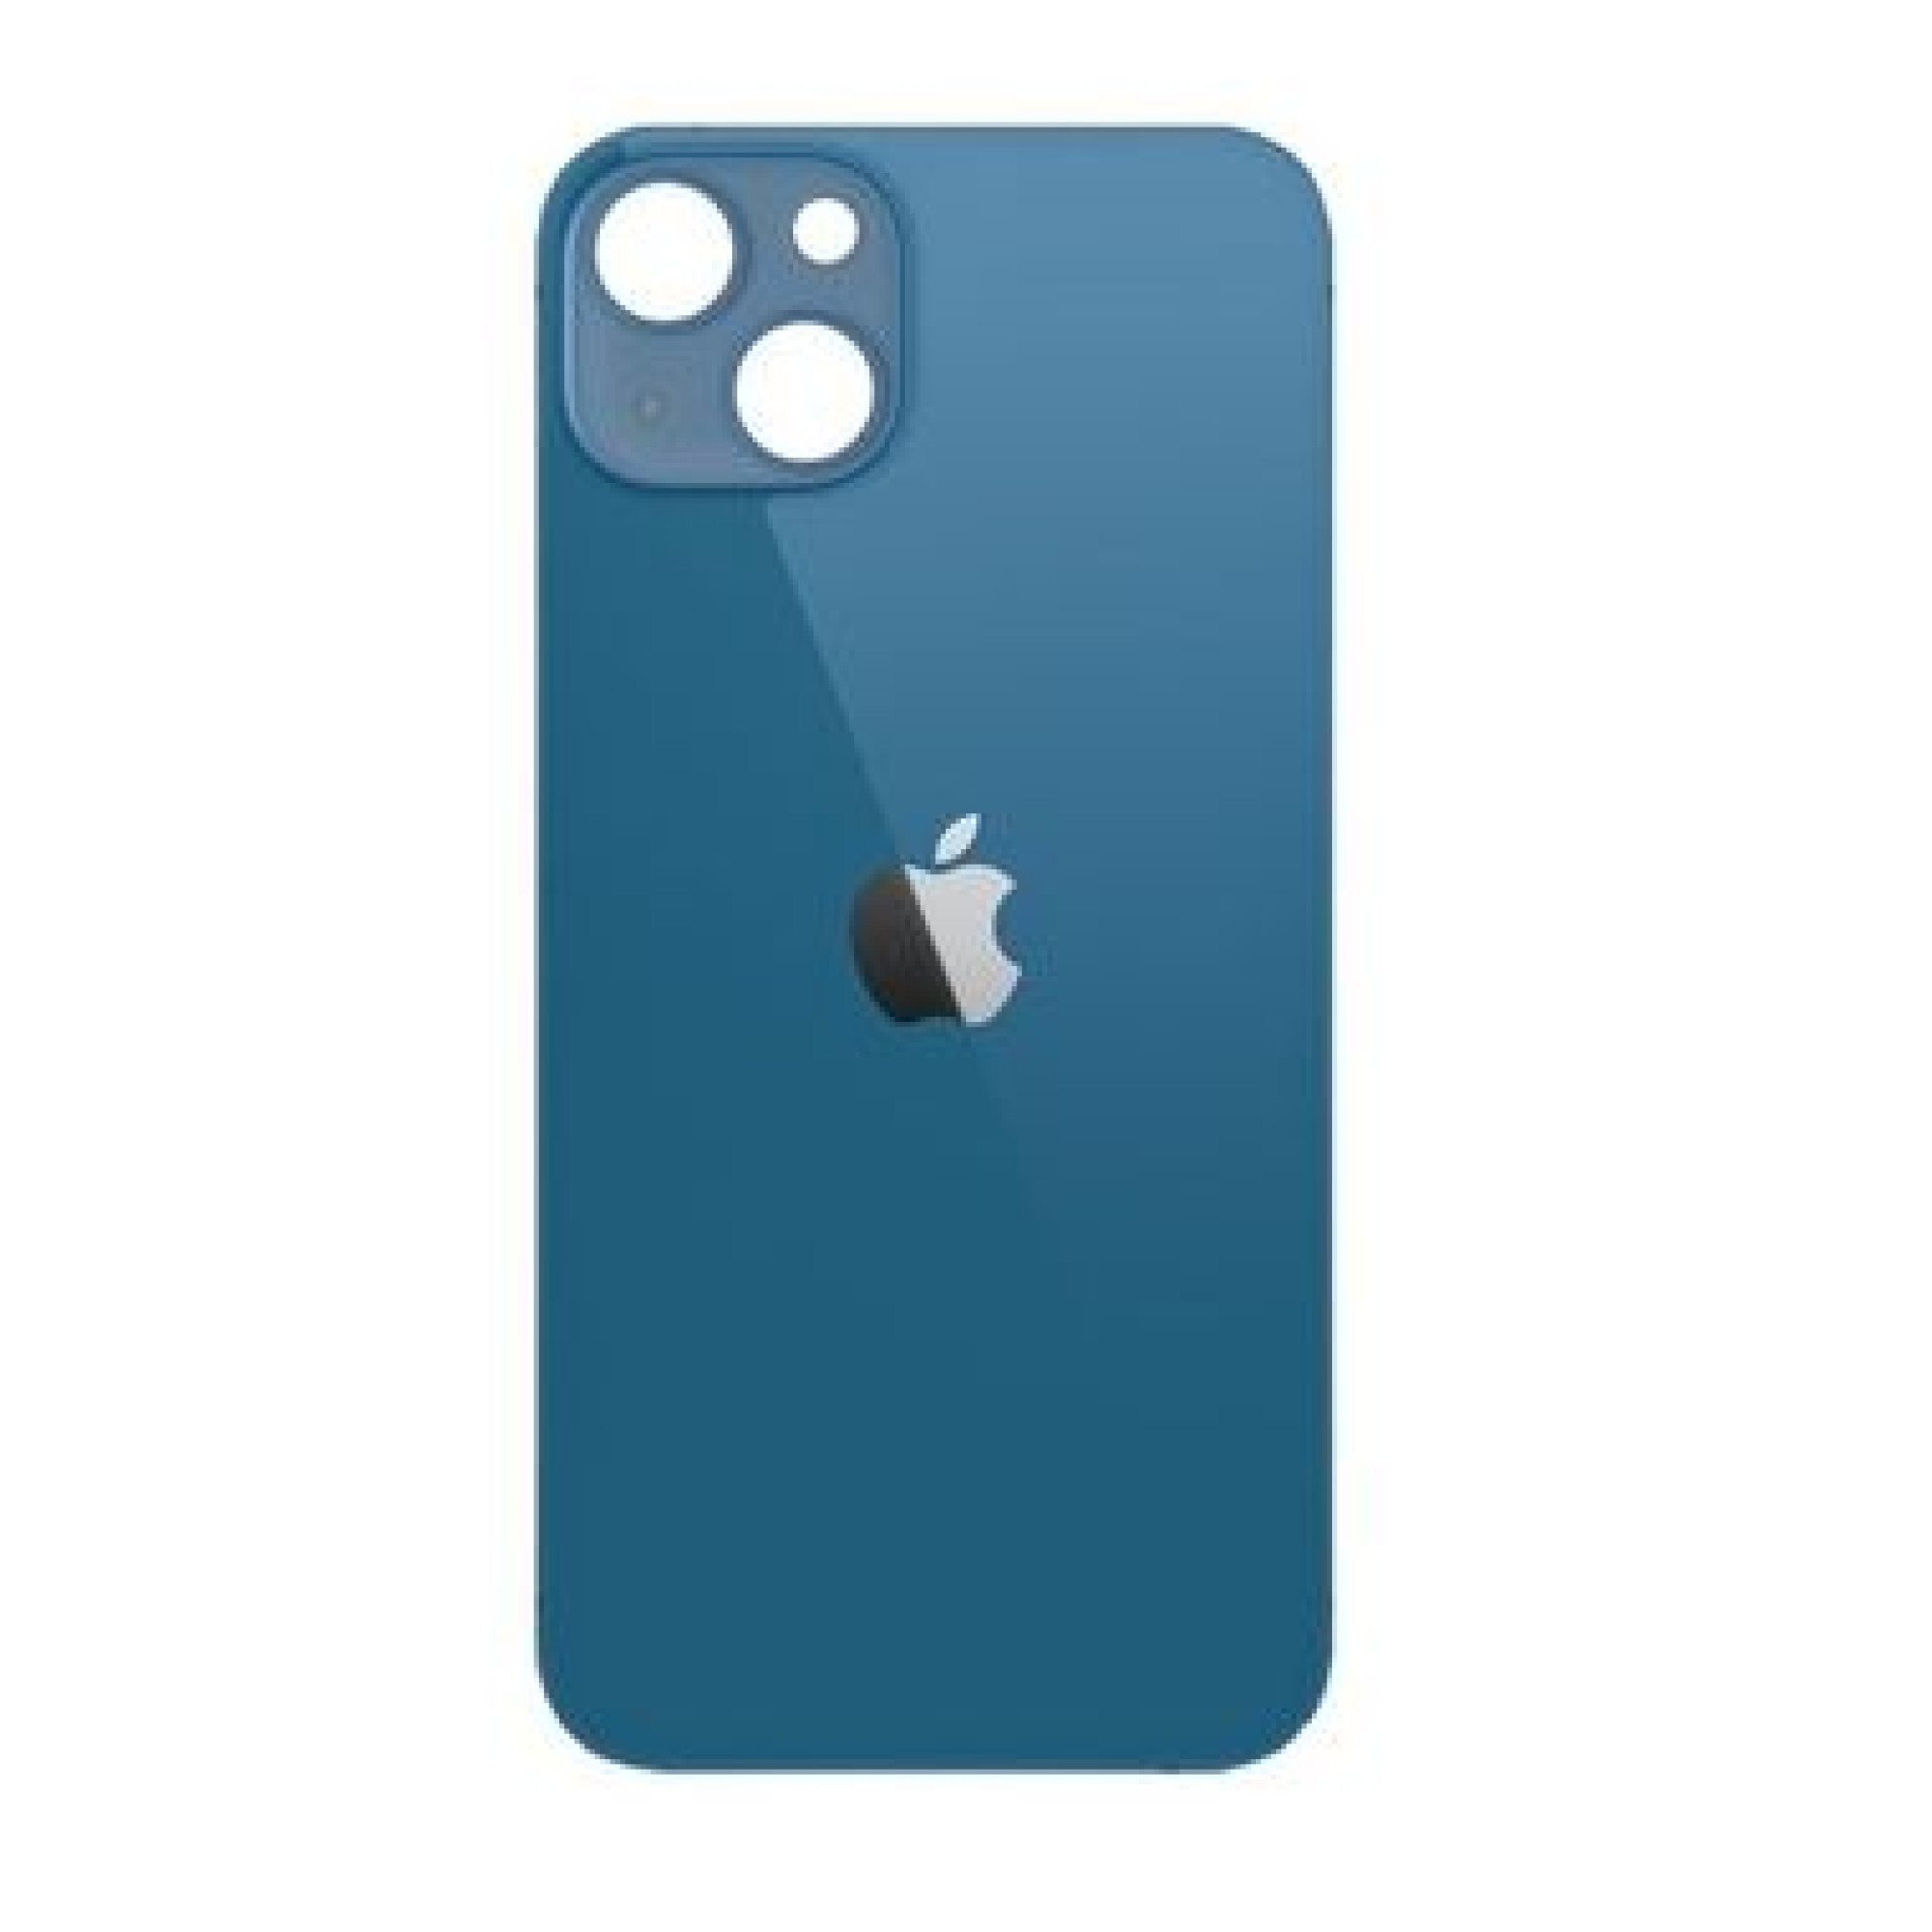 Задняя крышка для Apple iPhone 13 mini (широкое отверстие под камеру), синяя - фото